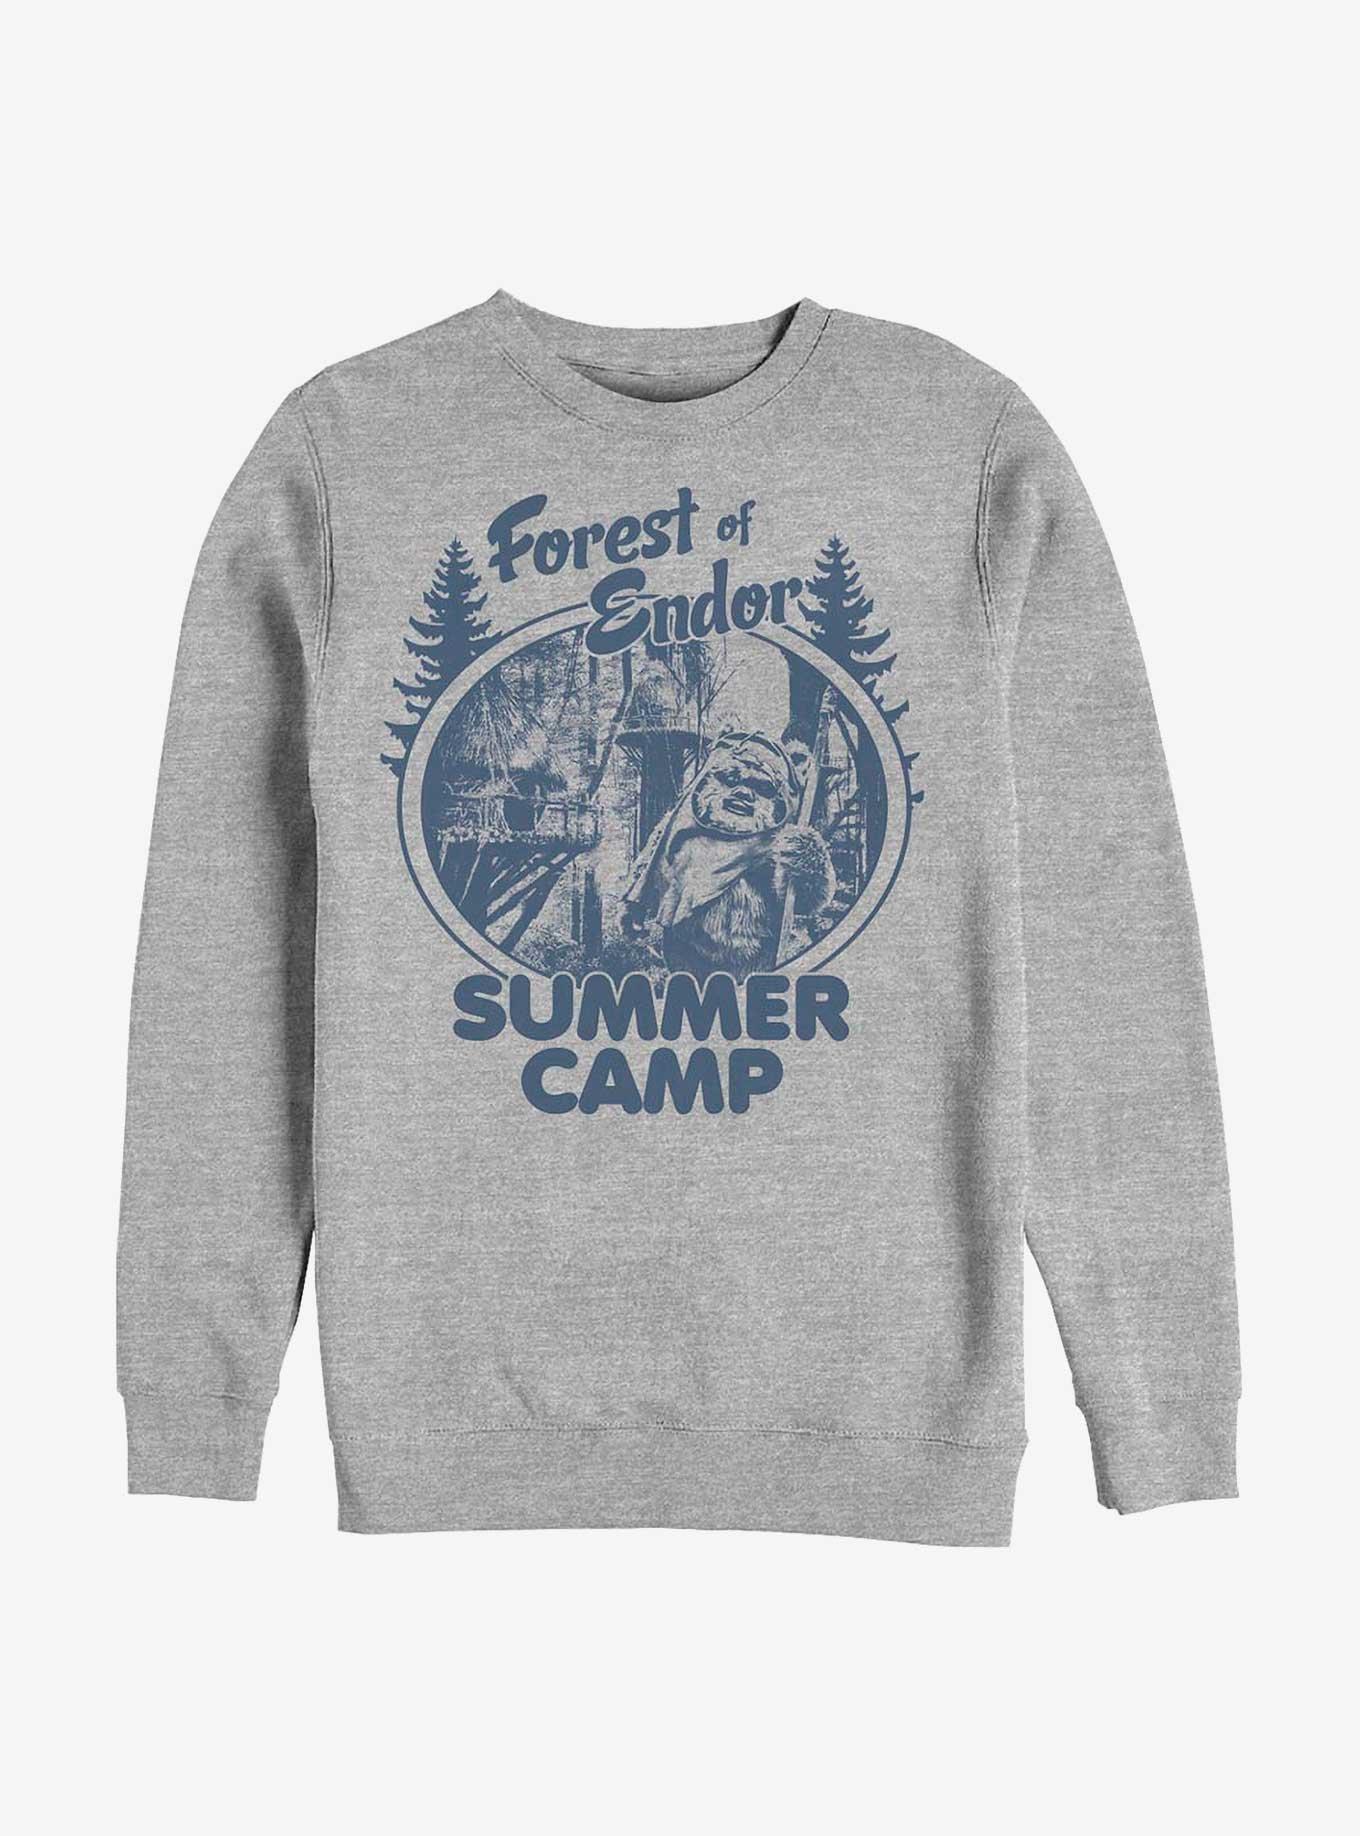 Star Wars Forest Of Endor Summer Camp Sweatshirt, ATH HTR, hi-res